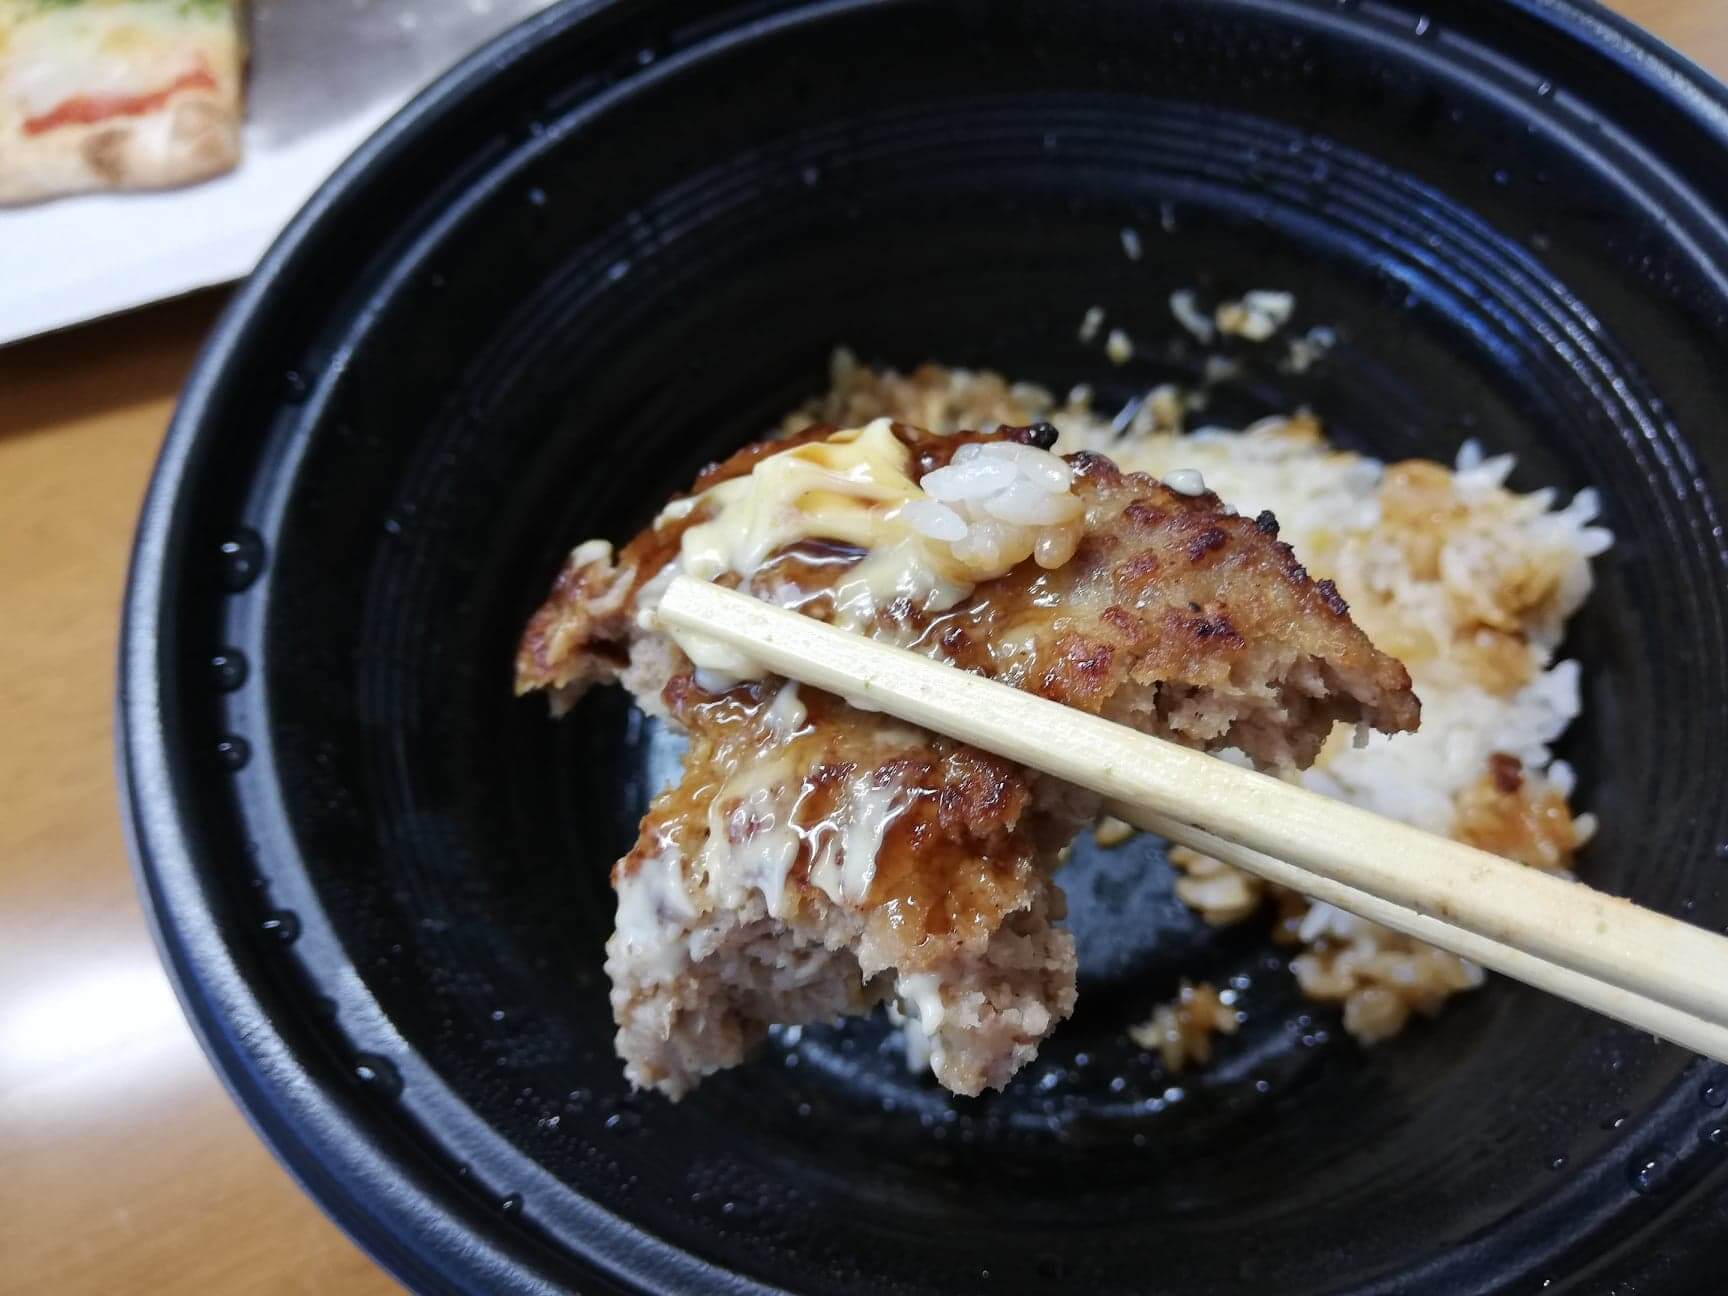 ガストのテイクアウトメニュー『ランチハンバーグロコモコ丼』のハンバーグを箸で持ち上げた写真